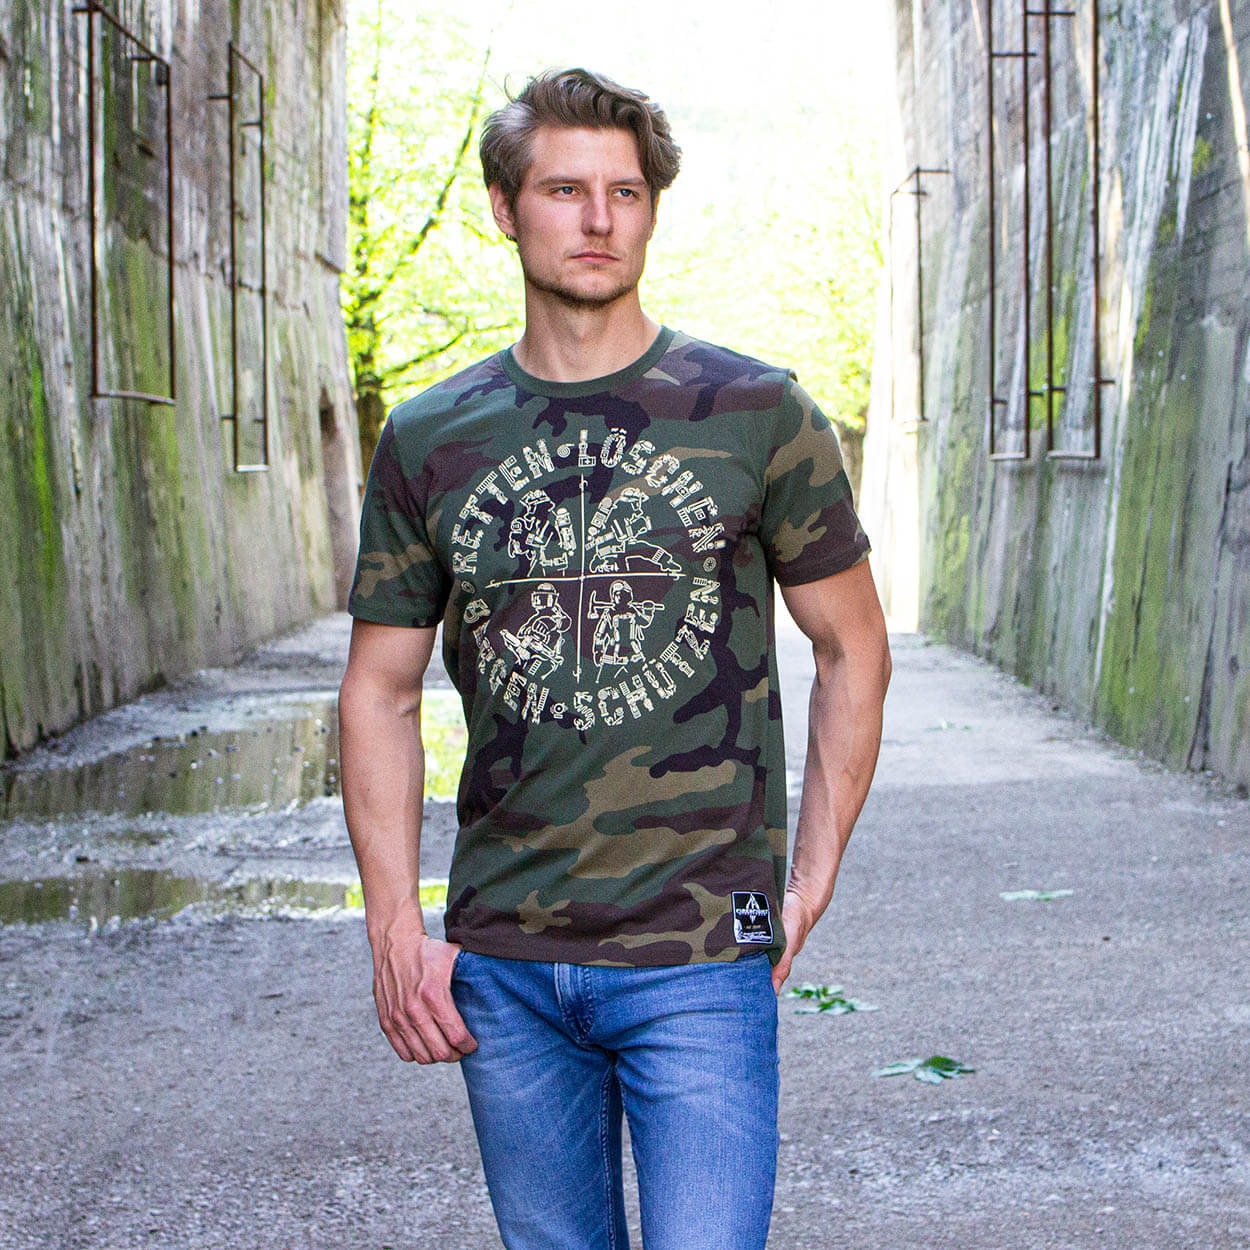 Retten Löschen Bergen Schützen - Männer T-Shirt Camouflage